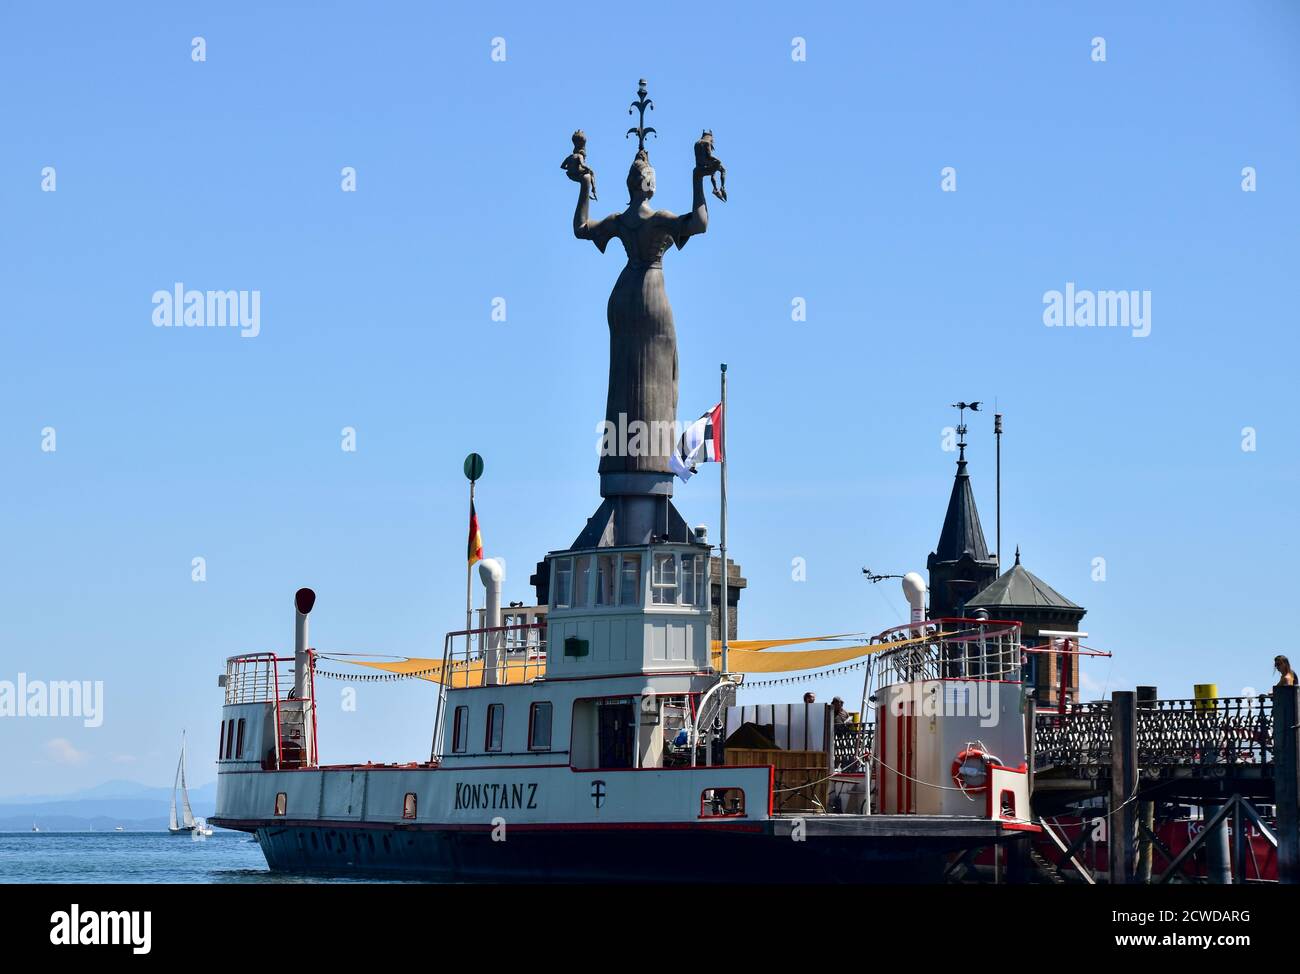 Konstanz, Alemania - 27 de mayo de 2020: Puerto de Constanza con faro y estatua de Imperia. Foto de stock